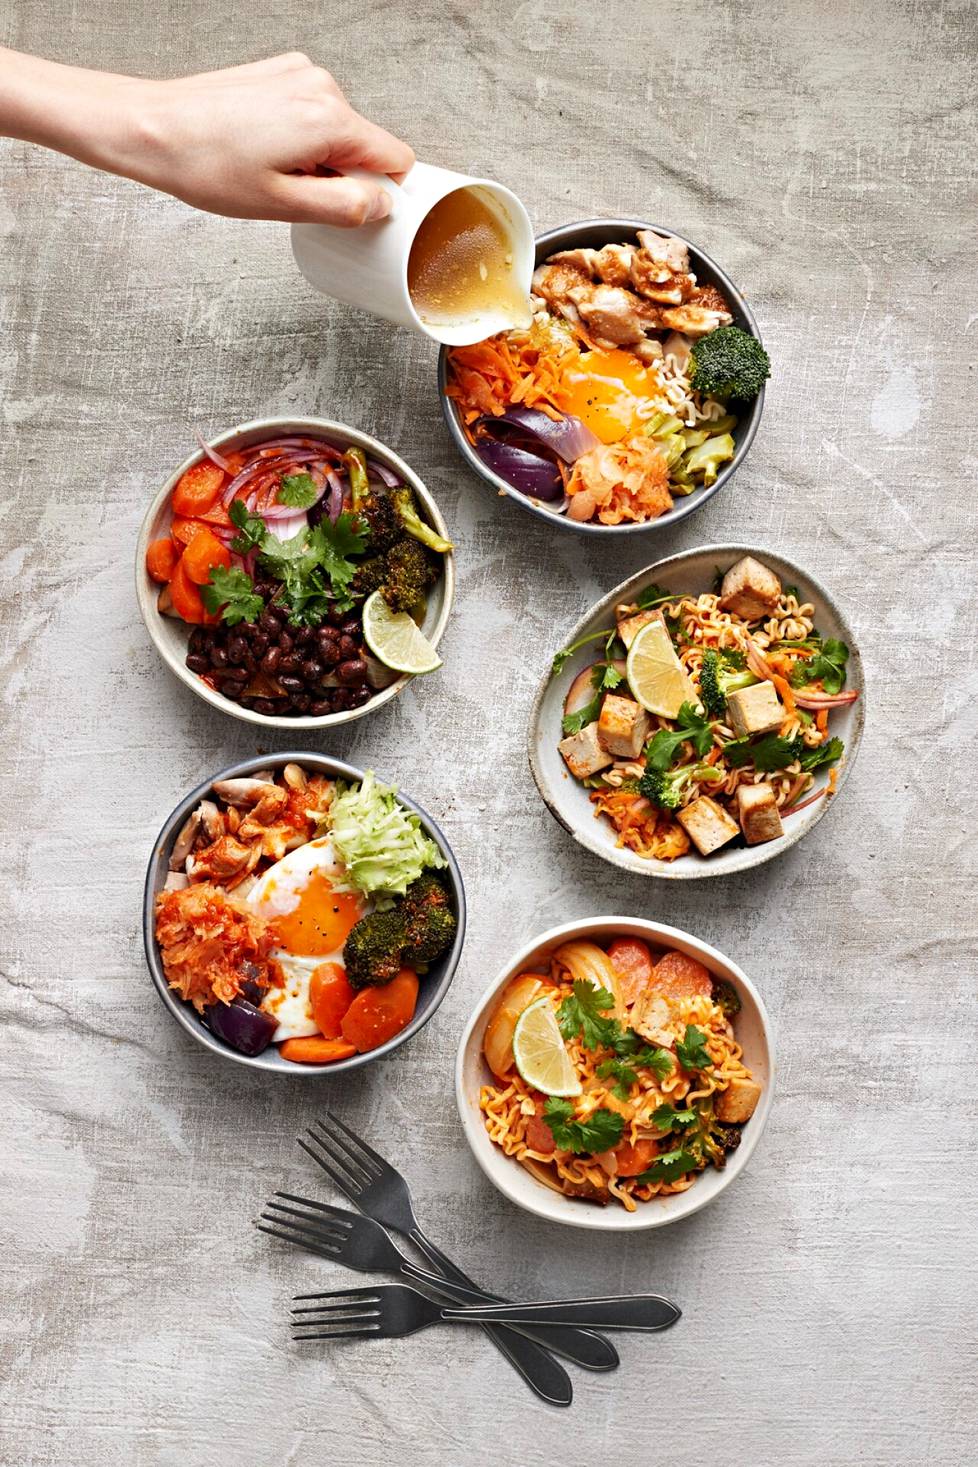 Yksinkertaisista raaka-aineista syntyi viisi erilaista ruokaa, kuten wokki, keitto,  salaatti ja pari riisikulhoa.